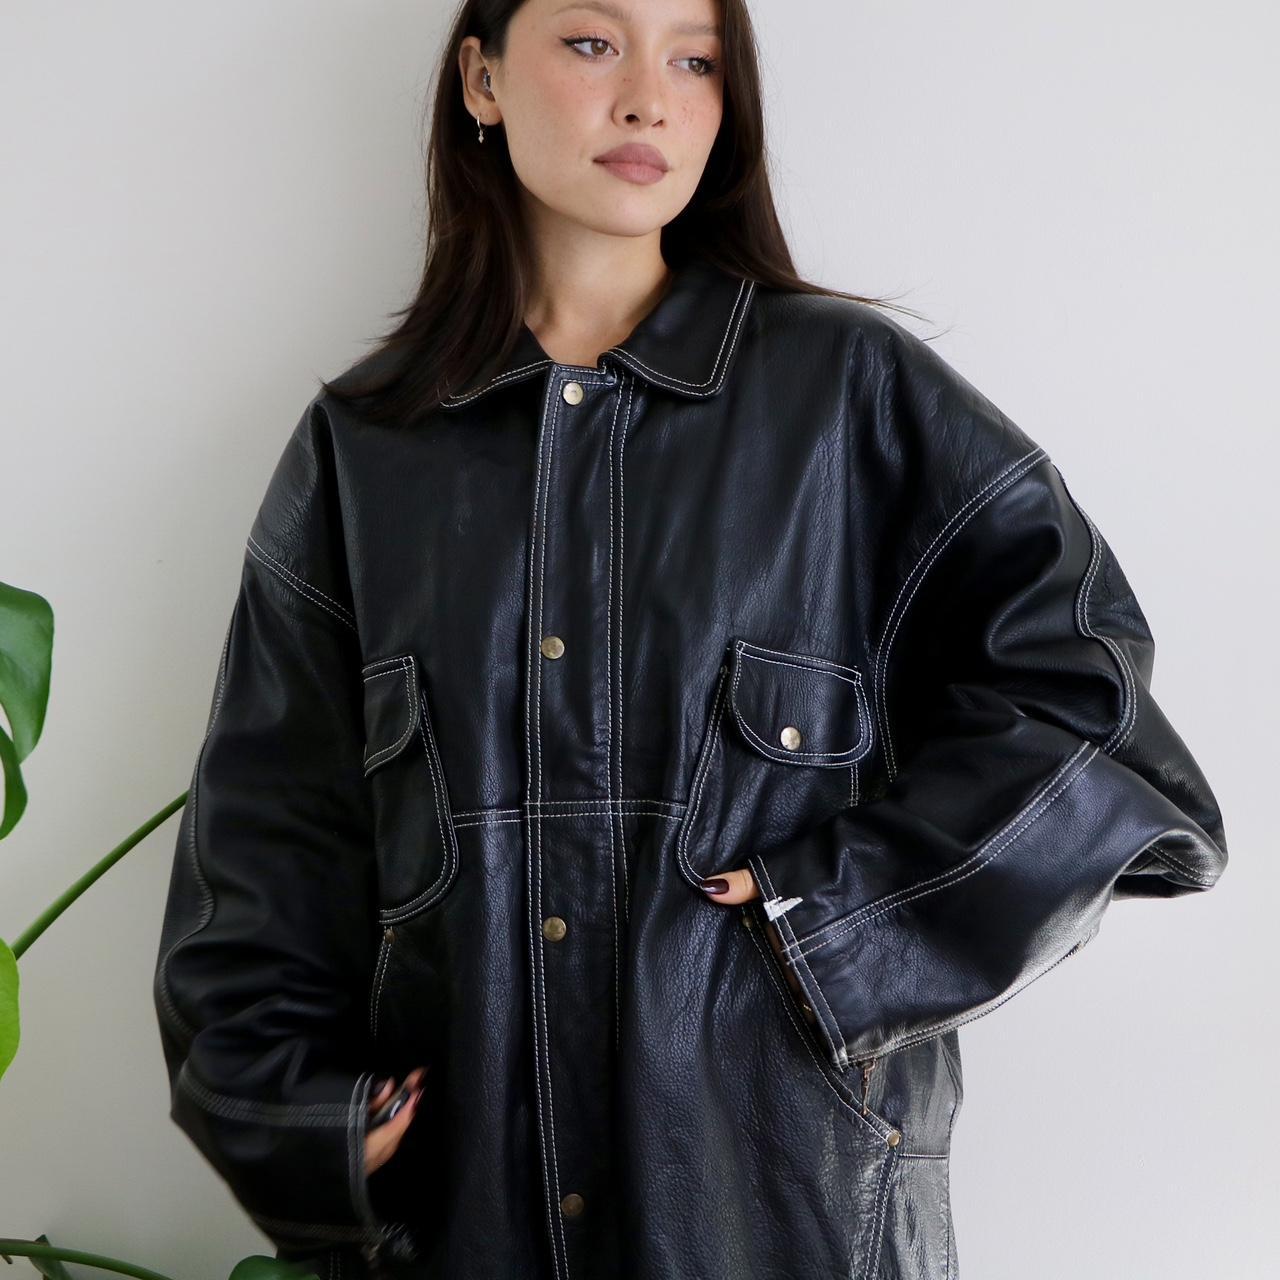 vintage grunge leather contrast jacket ☕️🍂 long... - Depop